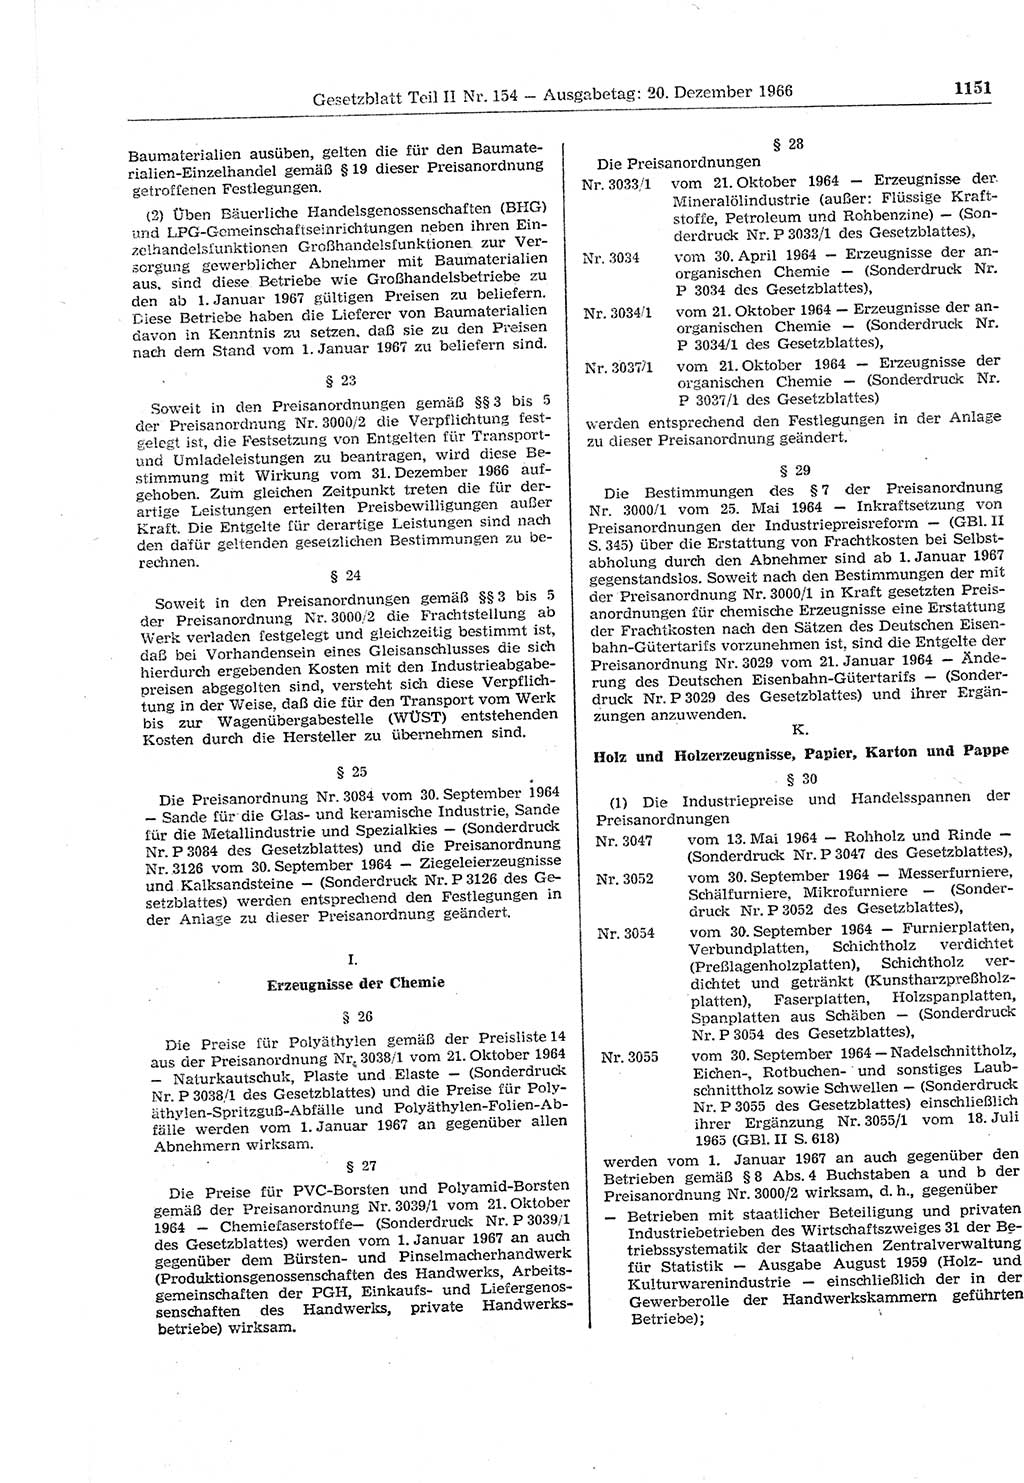 Gesetzblatt (GBl.) der Deutschen Demokratischen Republik (DDR) Teil ⅠⅠ 1966, Seite 1151 (GBl. DDR ⅠⅠ 1966, S. 1151)